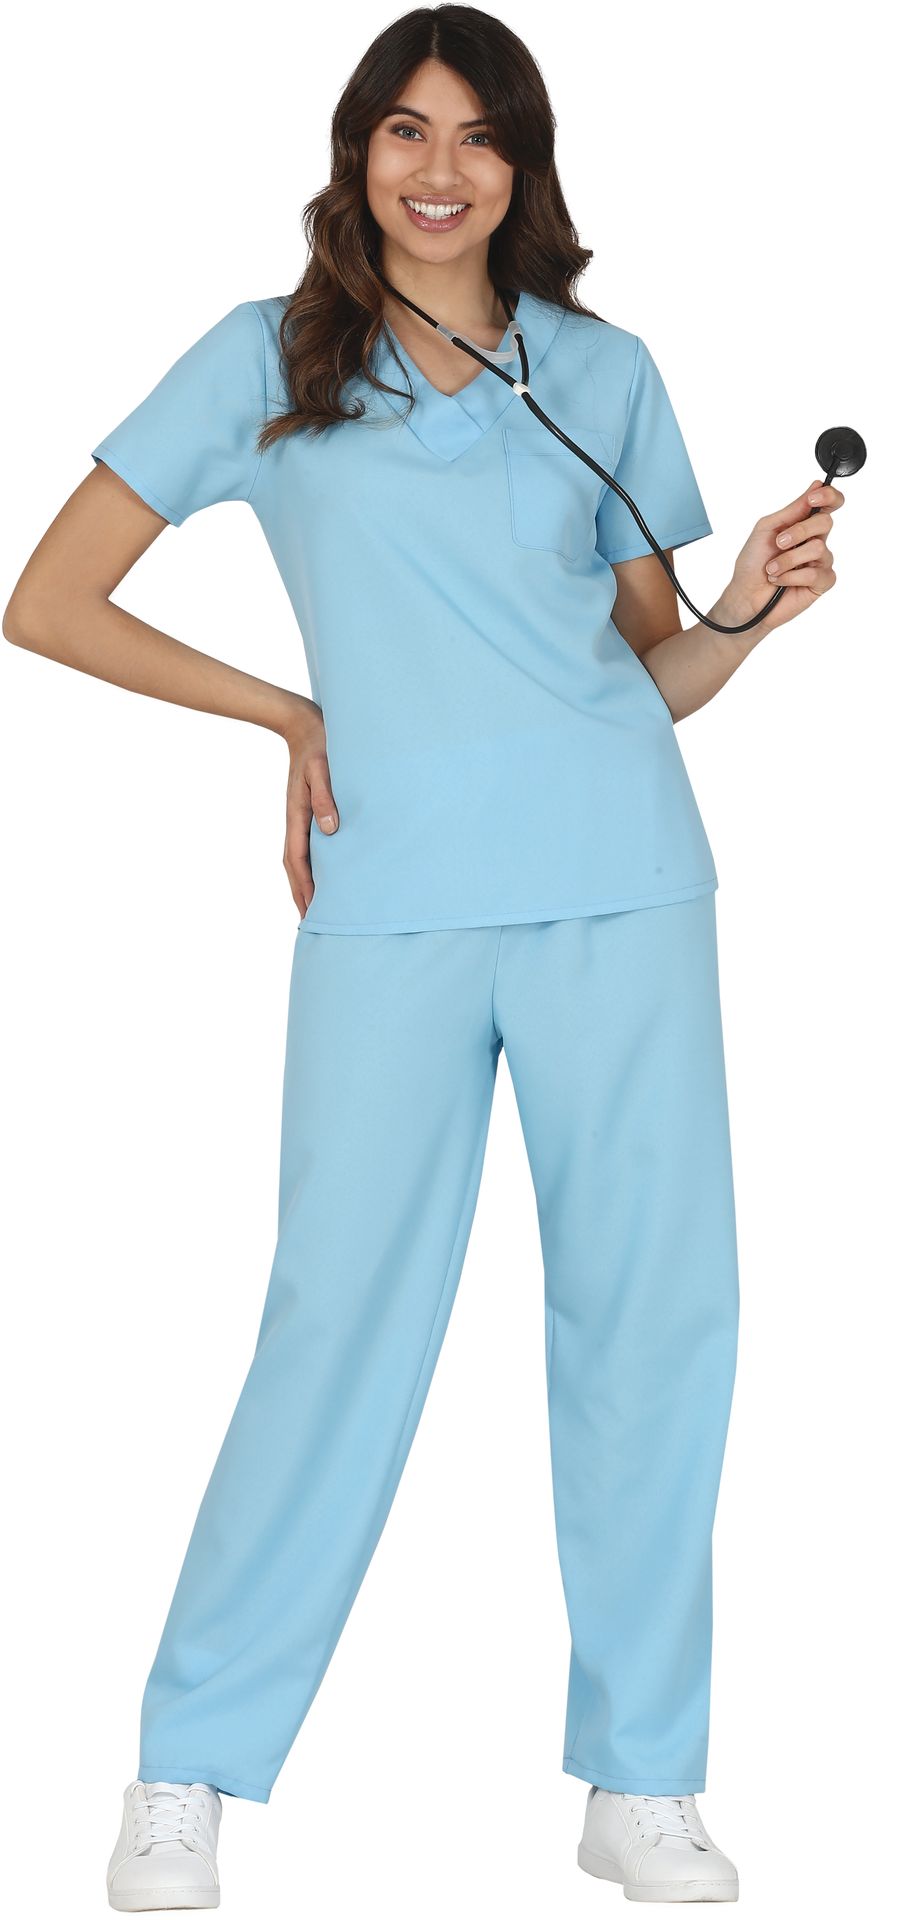 Blauwe ziekenhuis verpleegkundige kostuum vrouw